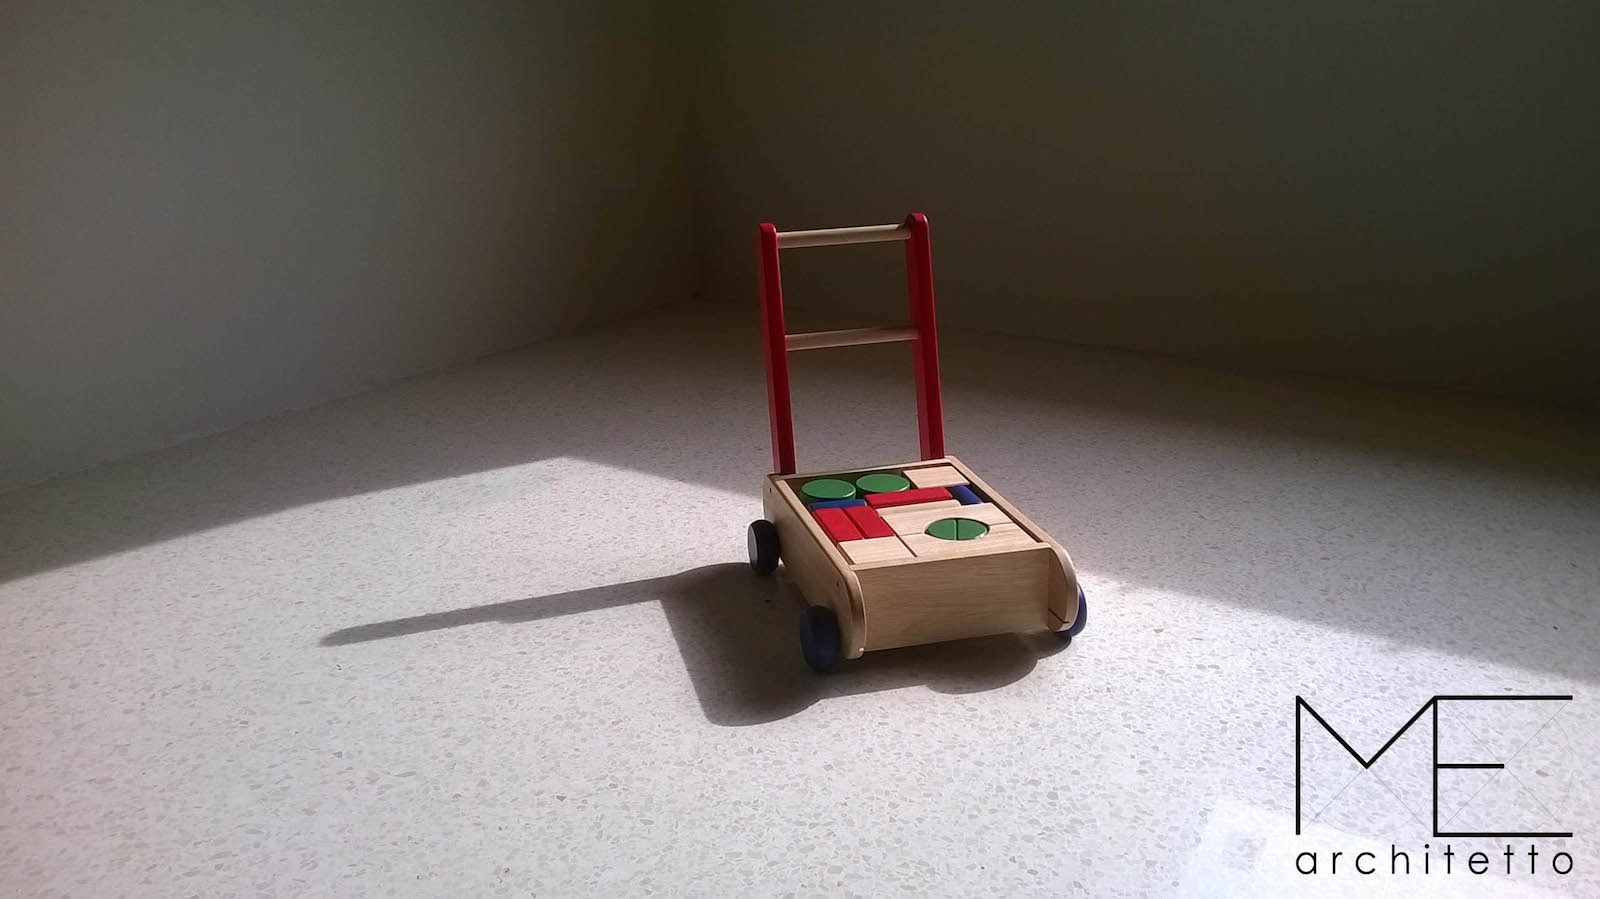 foto si un giocattolo in legno sul pavimento.